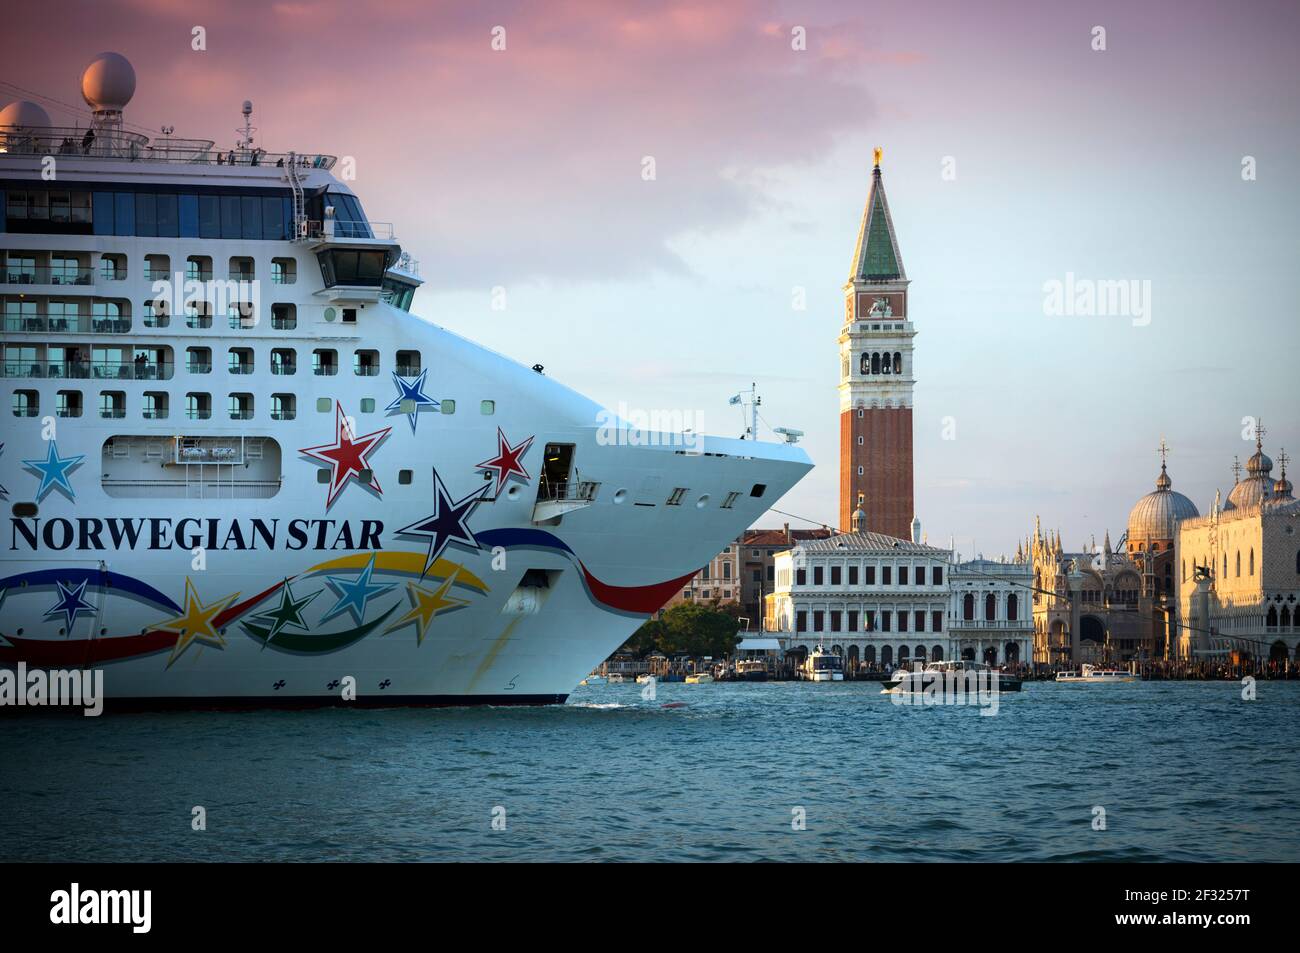 Italie, Venise, un bateau de croisière sur la Canale di San Marco Banque D'Images